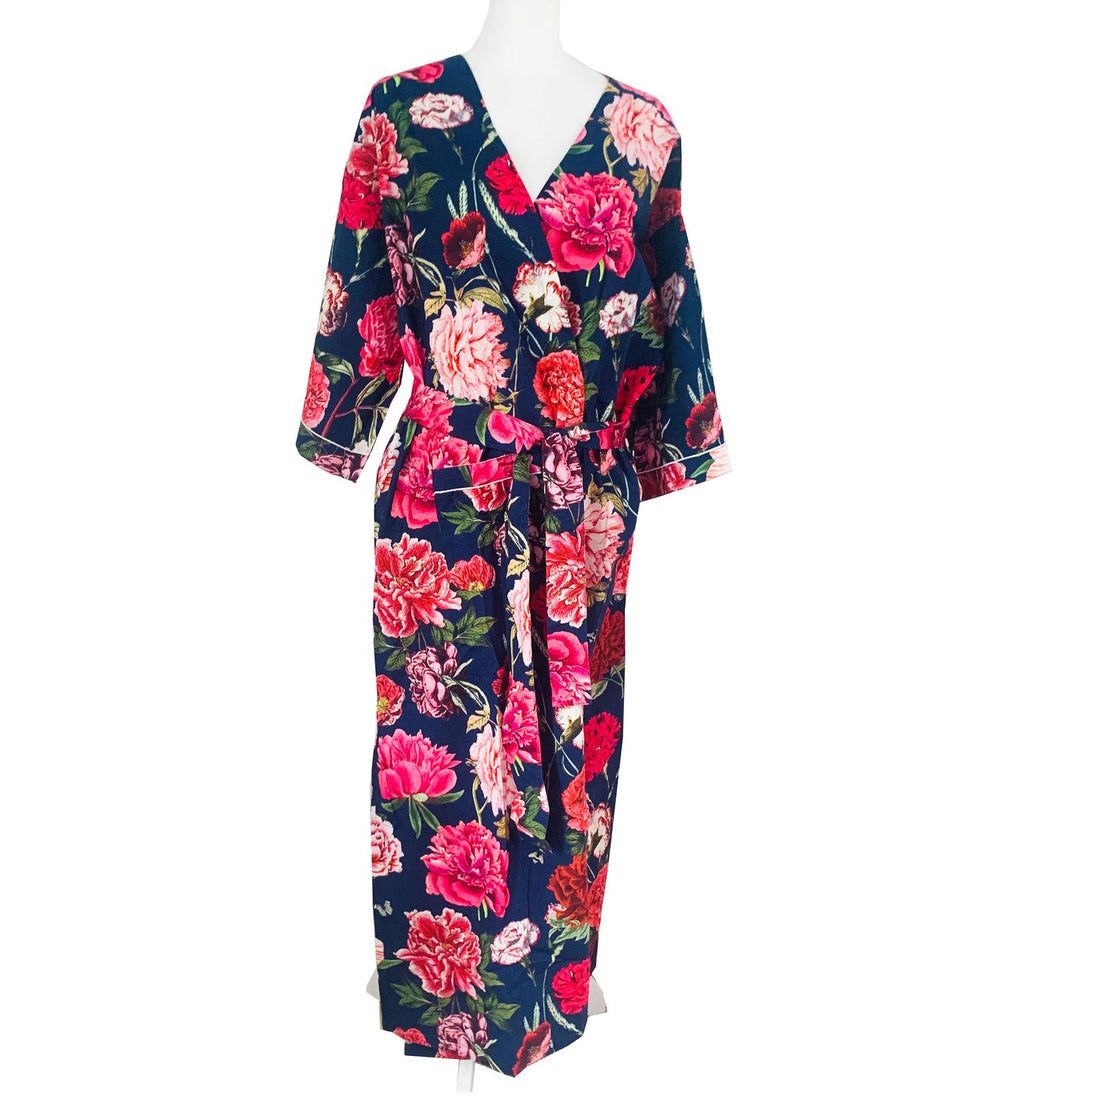 Kimono - Merri Navy